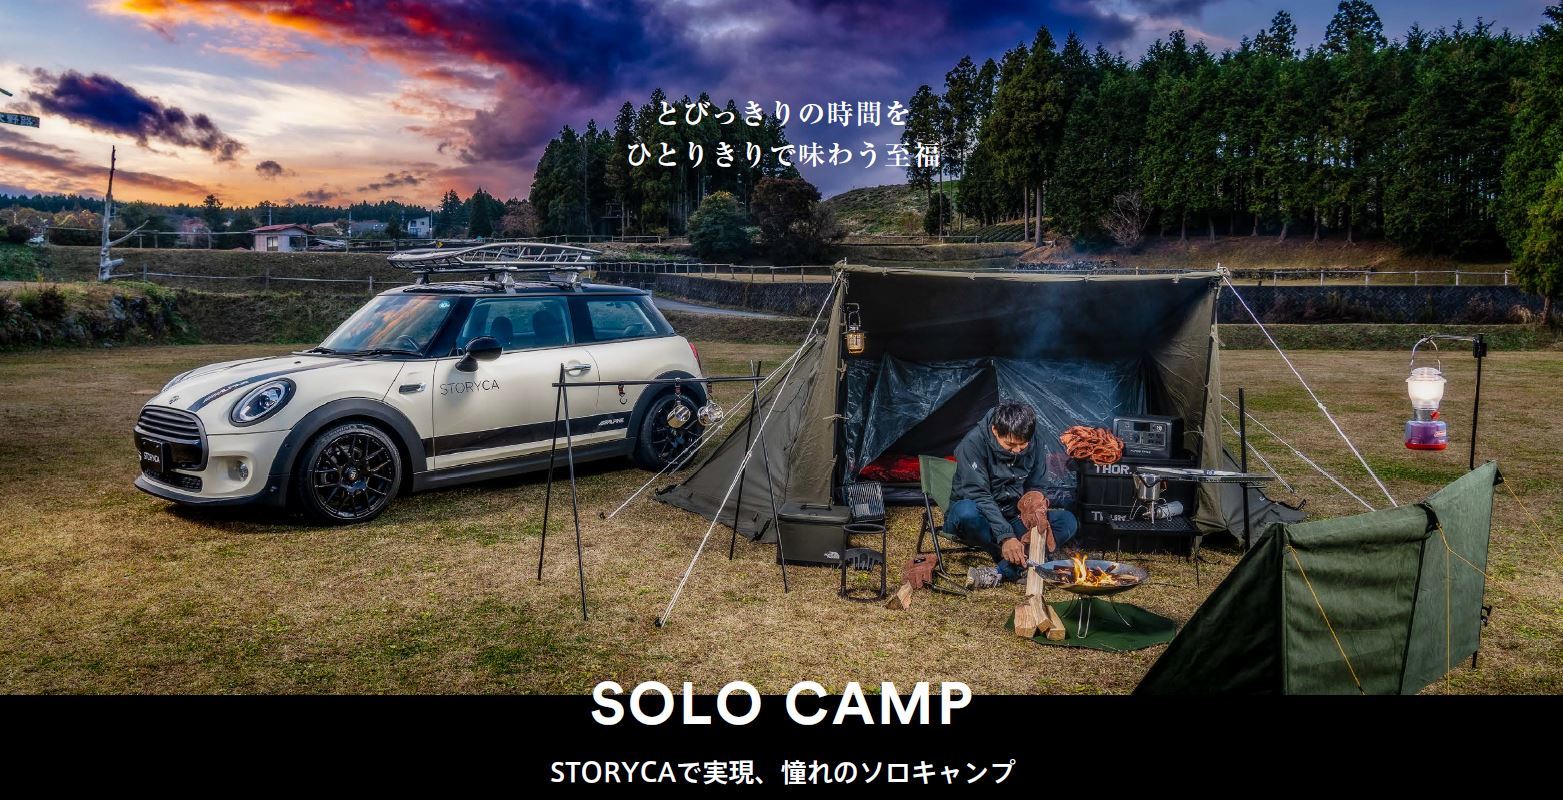 アルパインマーケティングのカーシェア「STORYCA」が拡大　
道具を持っていなくても憧れのソロキャンプに踏み出せる！
「SOLO CAMP STORY」の予約受付を12月20日(火)に開始